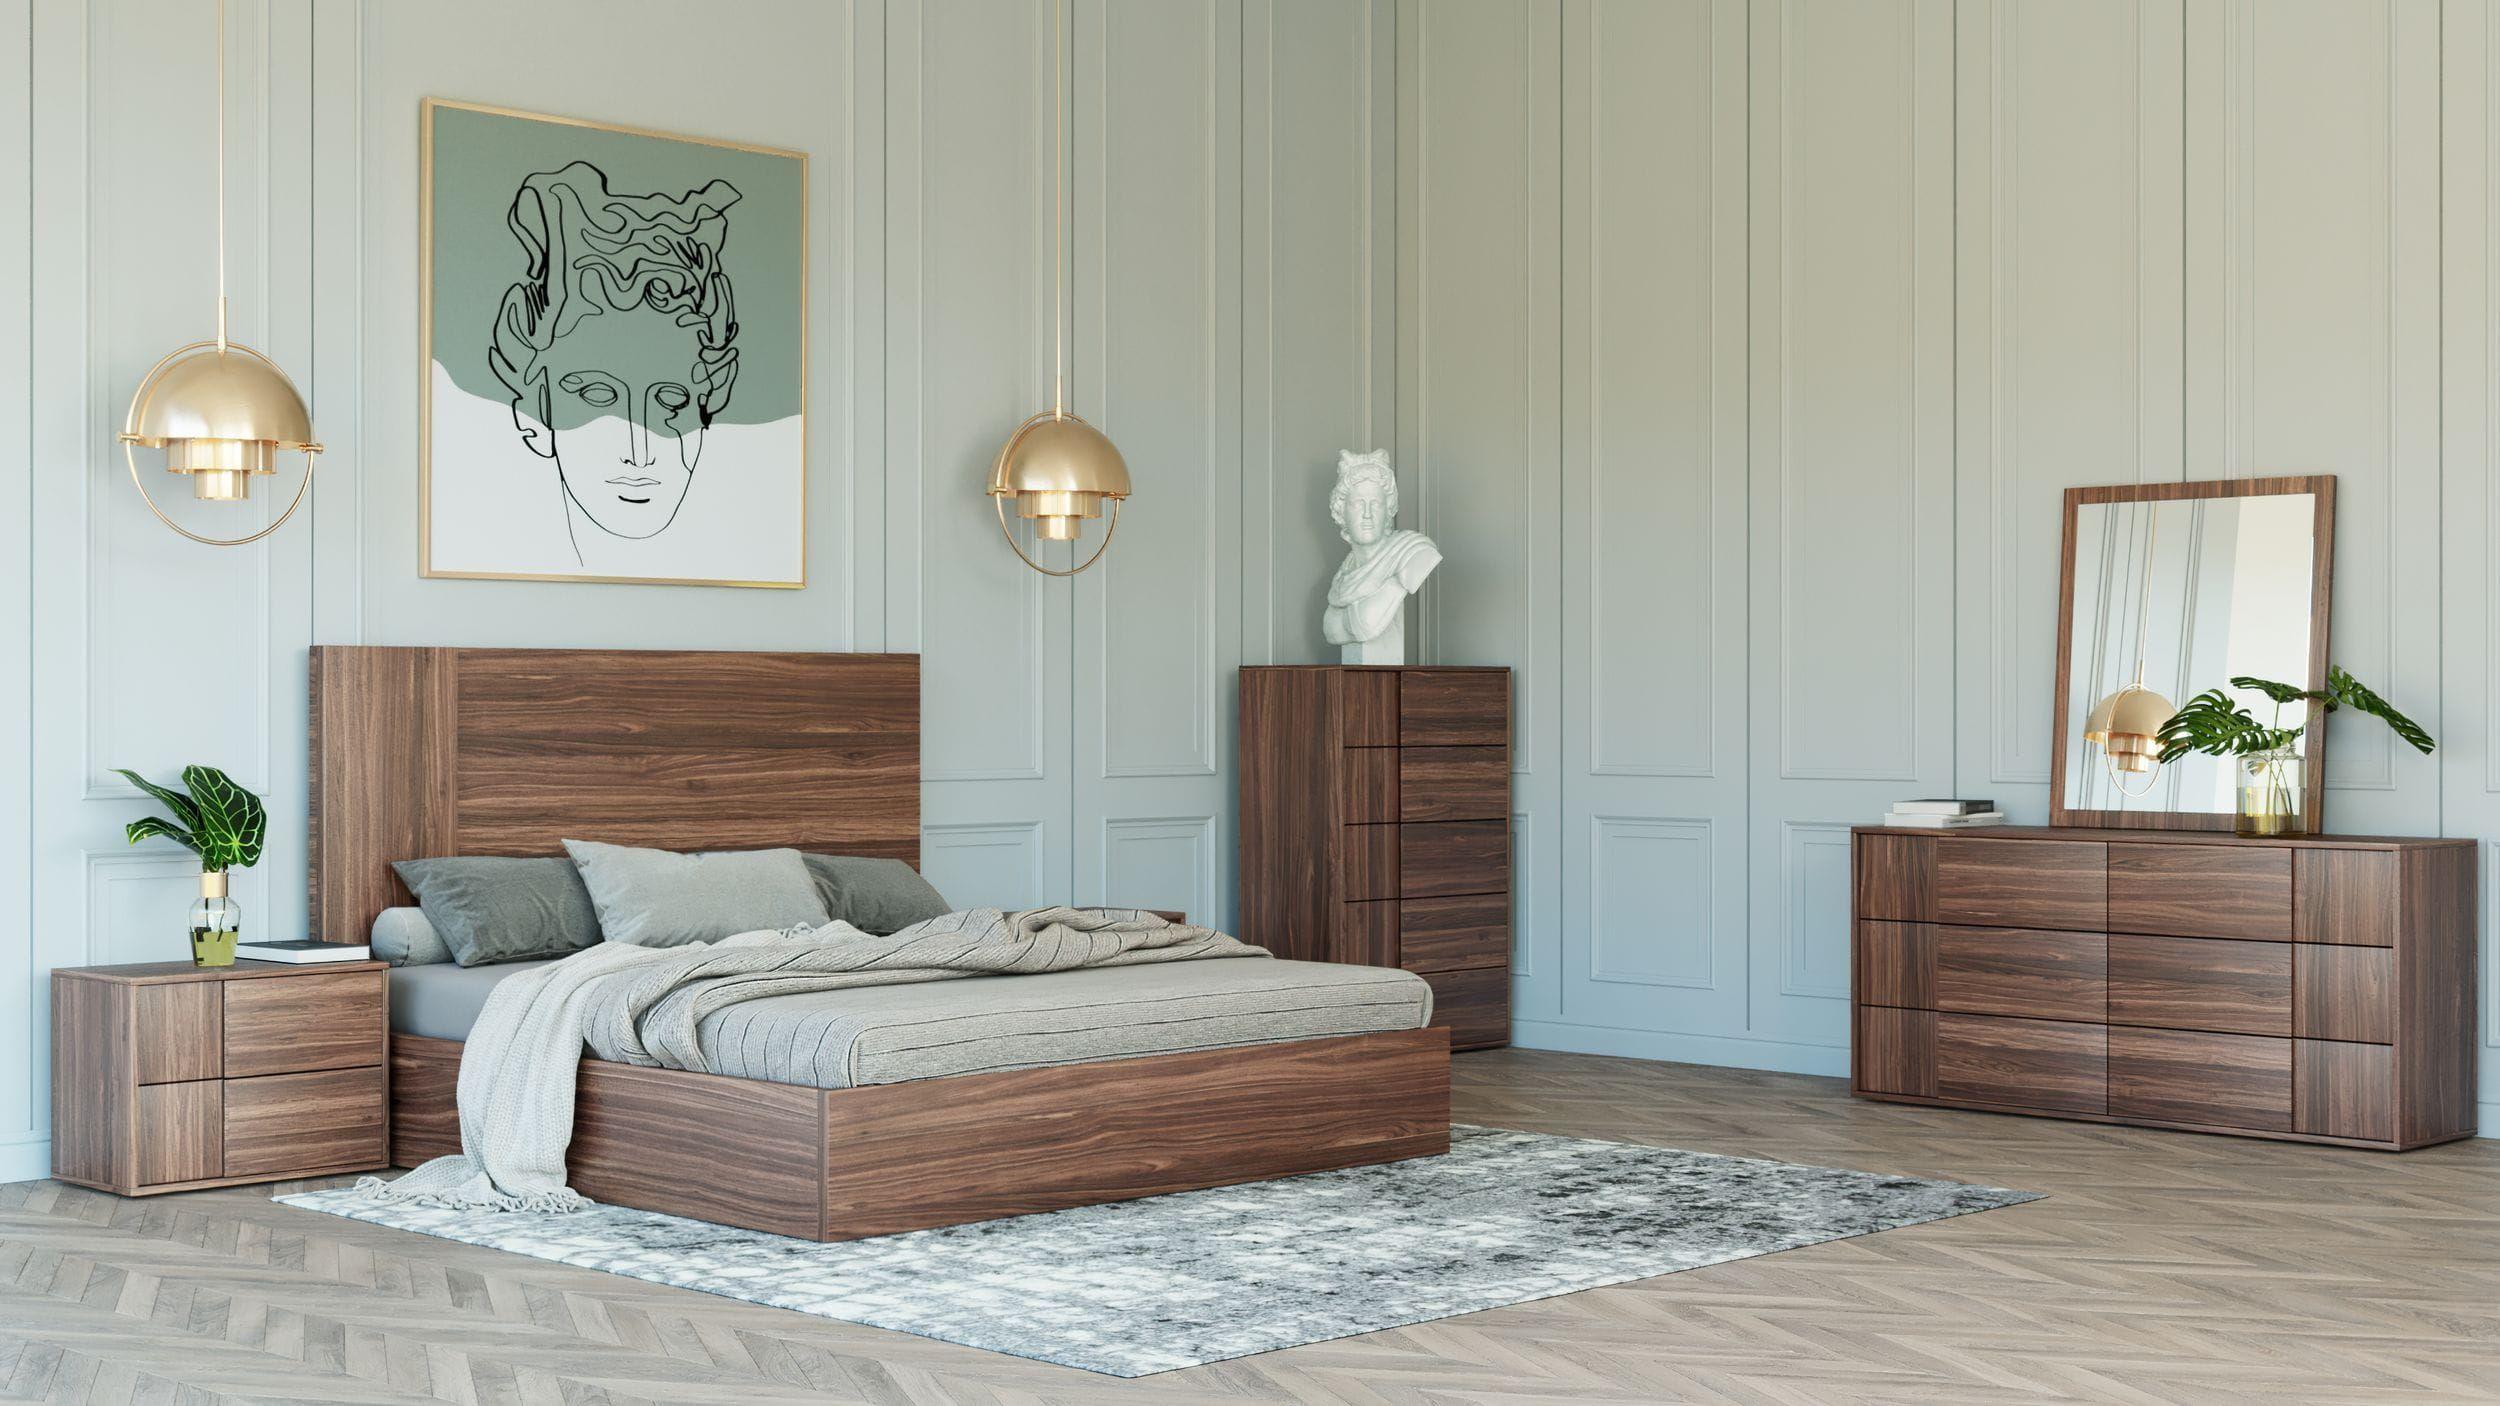 

    
Walnut Queen Size Panel Bedroom Set 5Pcs by VIG Nova Domus Asus
